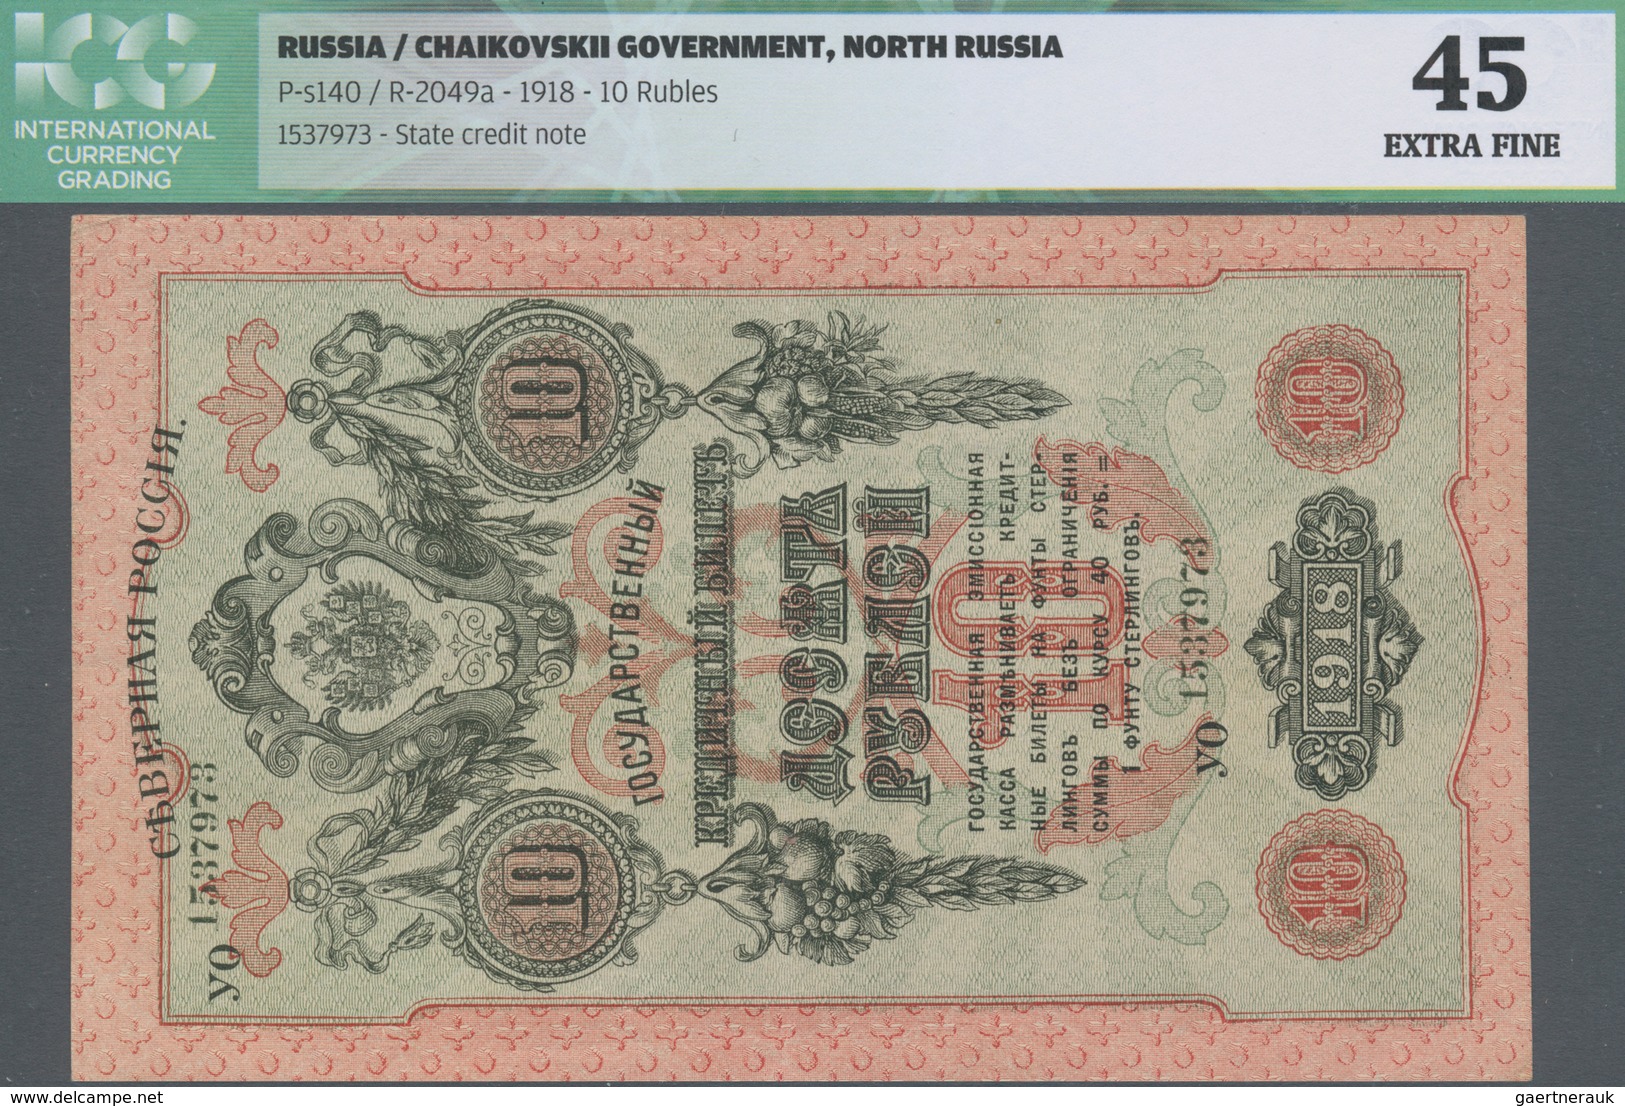 Russia / Russland: North Russia, Chaikovskii Government 10 Rubles 1918, P.S140, Excellent Condition, - Russia